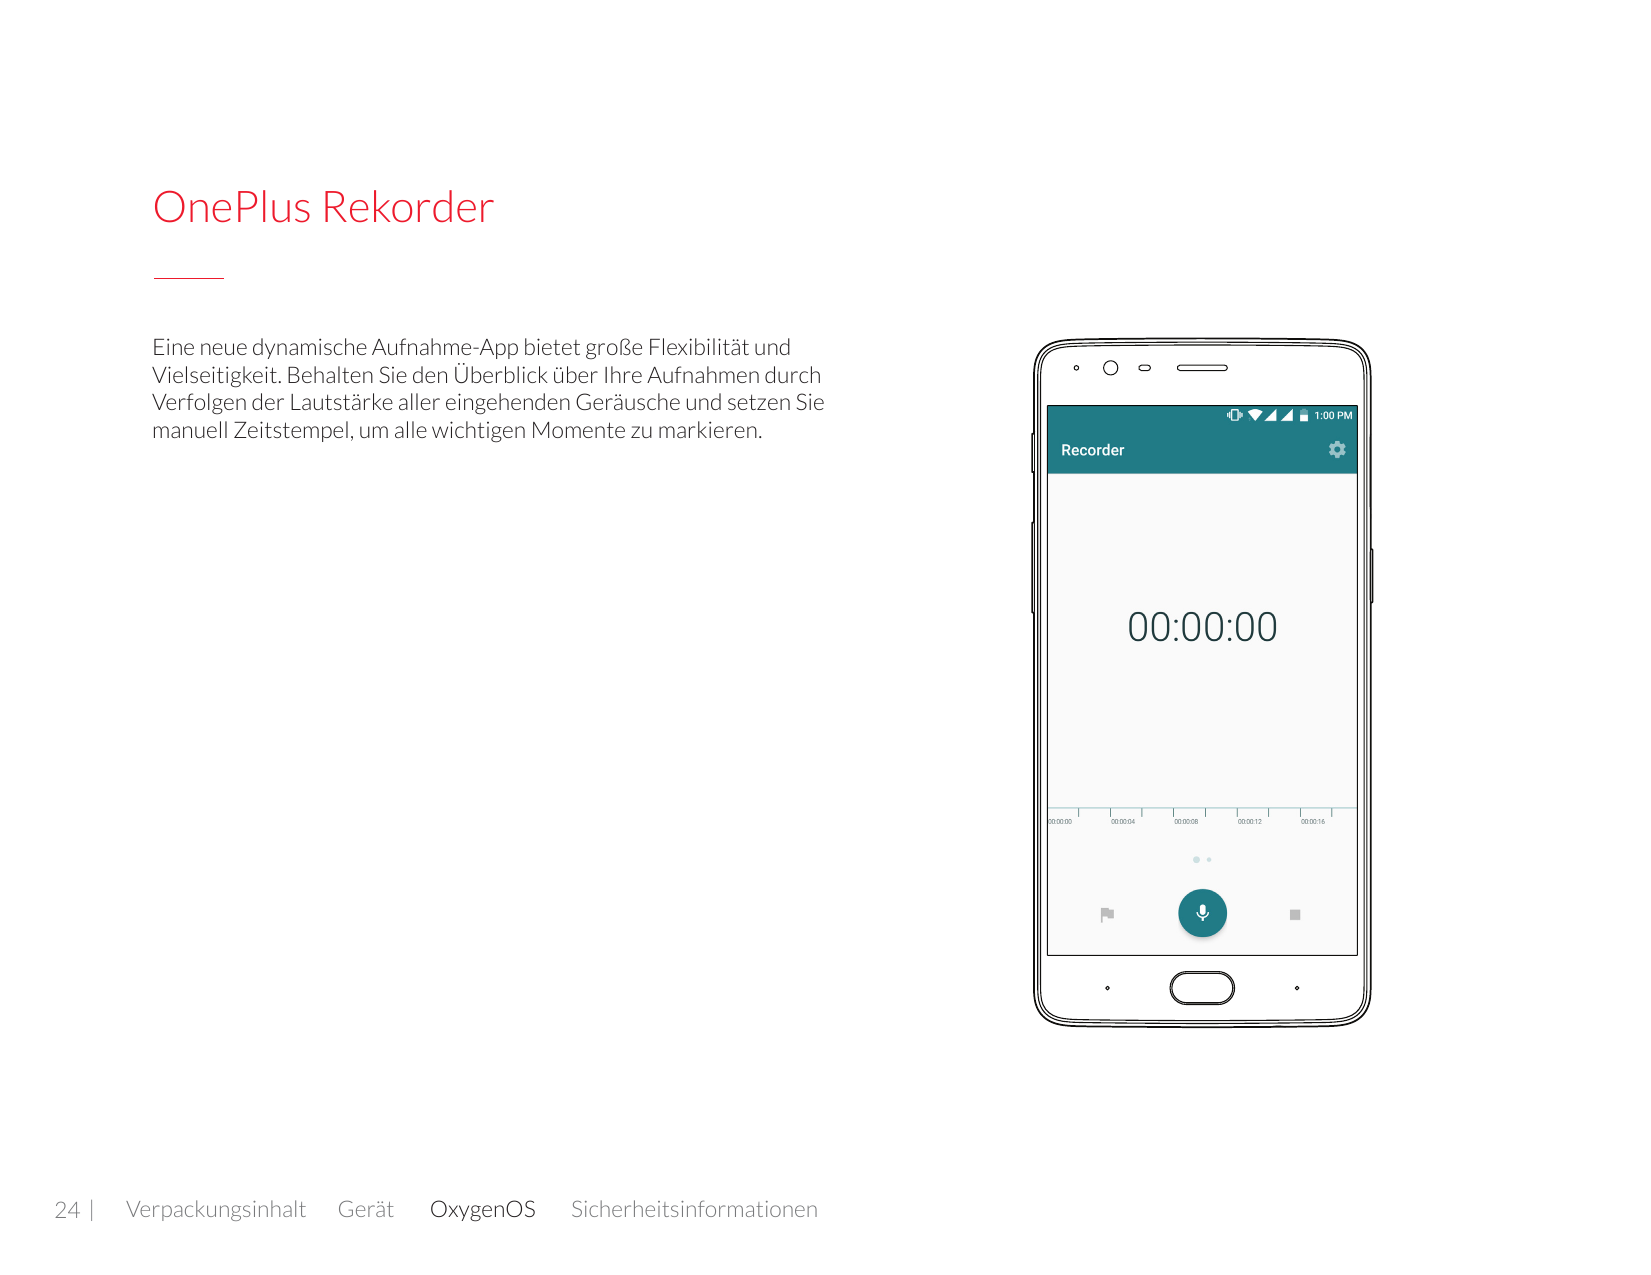 OnePlus RekorderEine neue dynamische Aufnahme-App bietet große Flexibilität undVielseitigkeit. Behalten Sie den Überblick über I